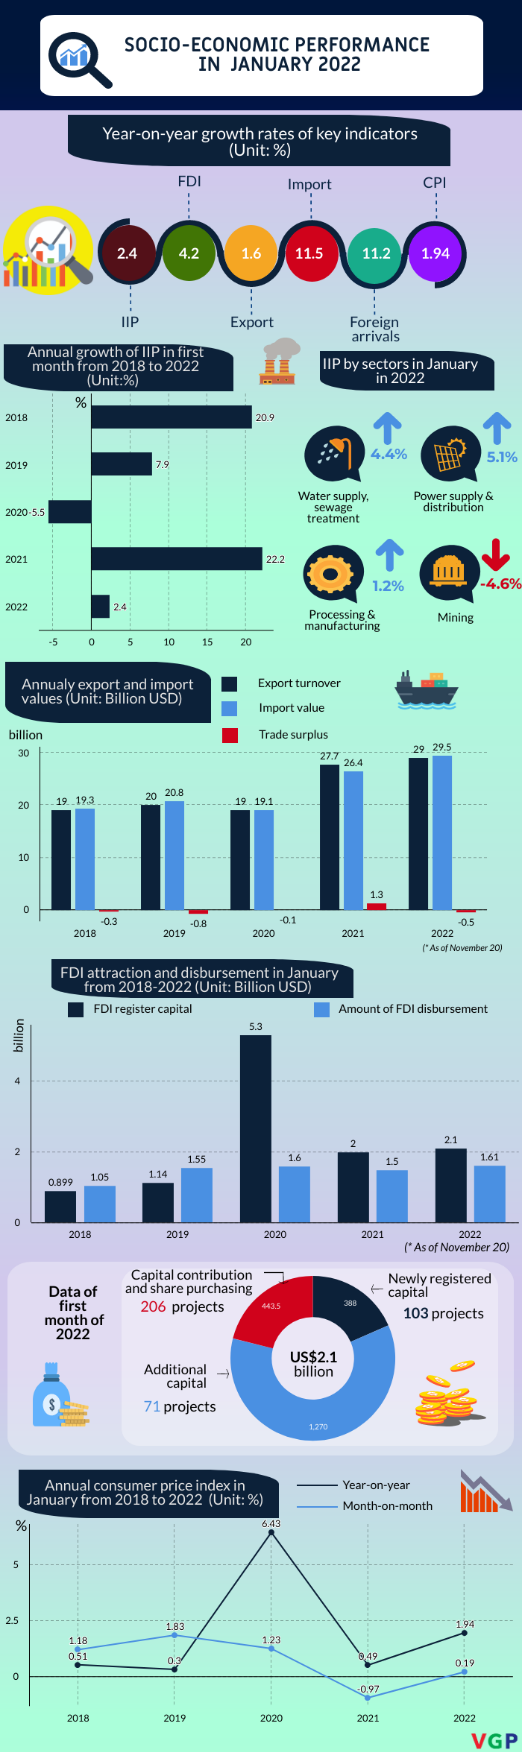 Infographic: Socio-economic performance in January 2022